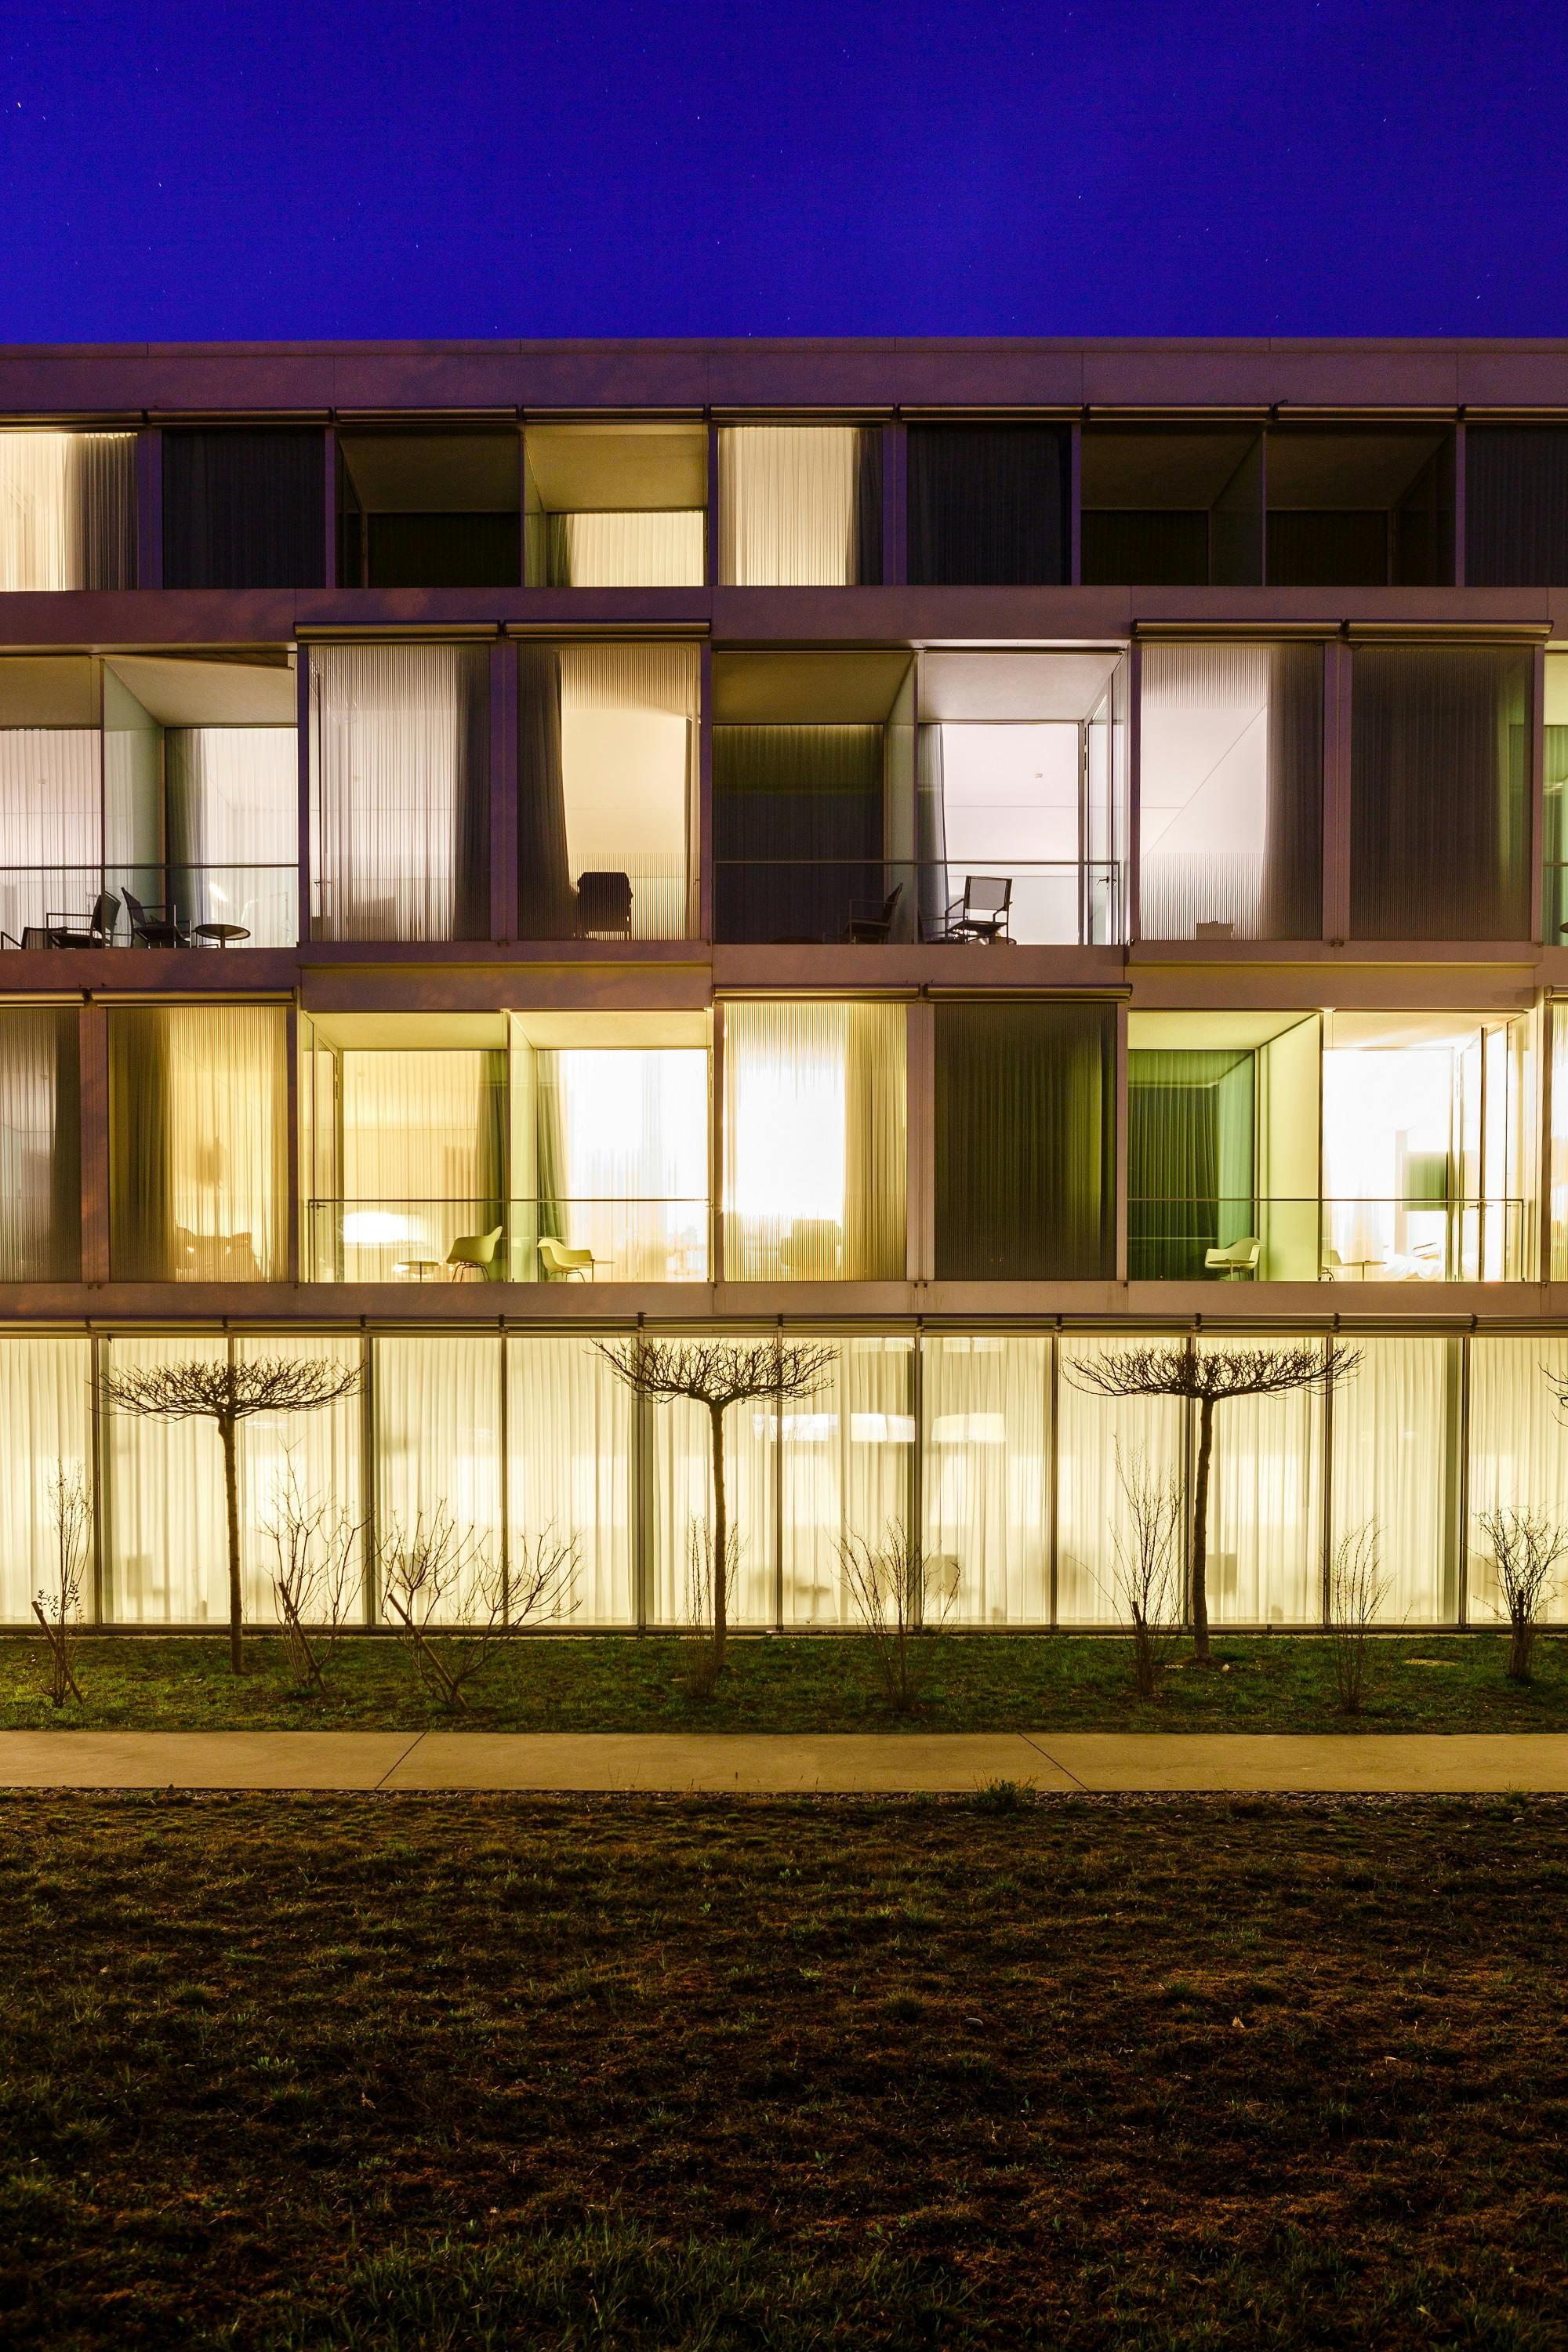 Beleuchtete Fassade eines modernen Wohngebäudes bei Nacht mit sichtbaren Innenräumen und Bäumen im Vordergrund.